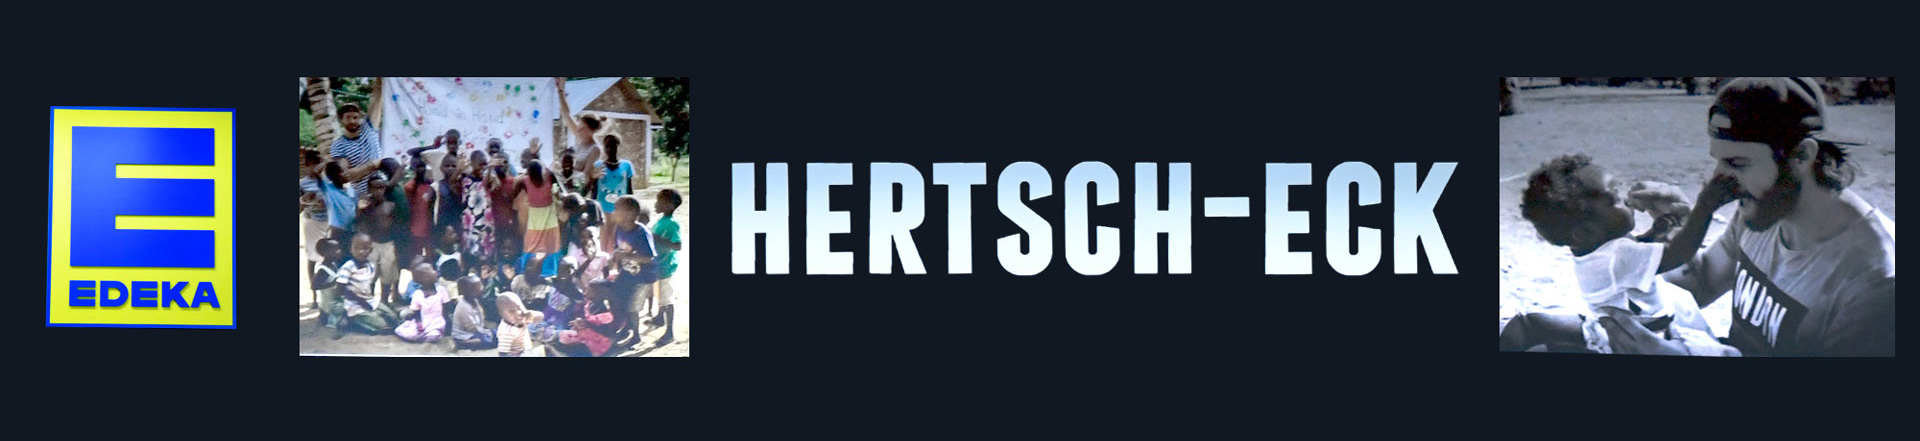 Hertsch-Eck